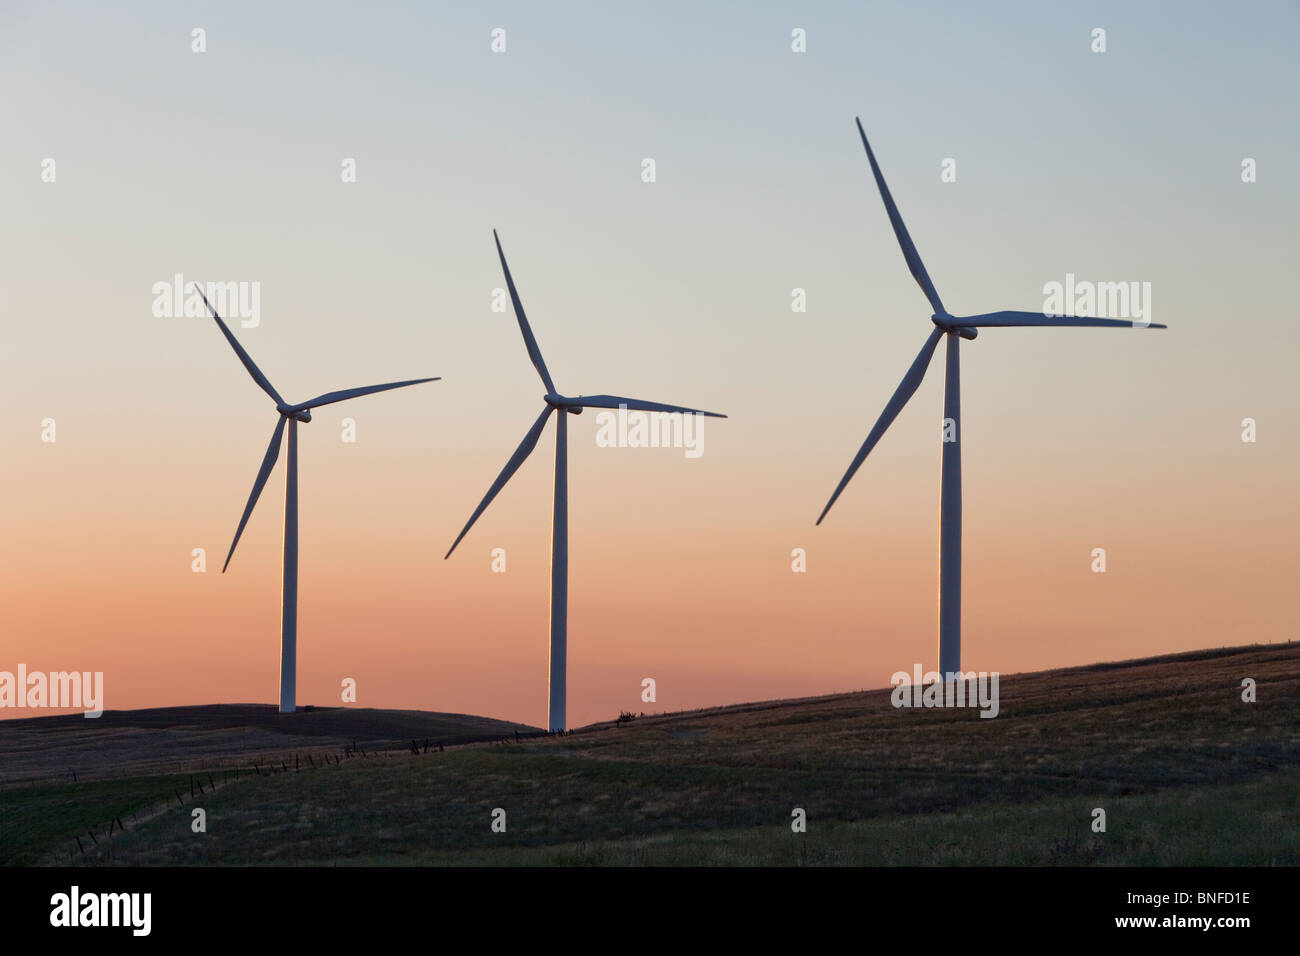 Wind farm, turbines first light, Stock Photo